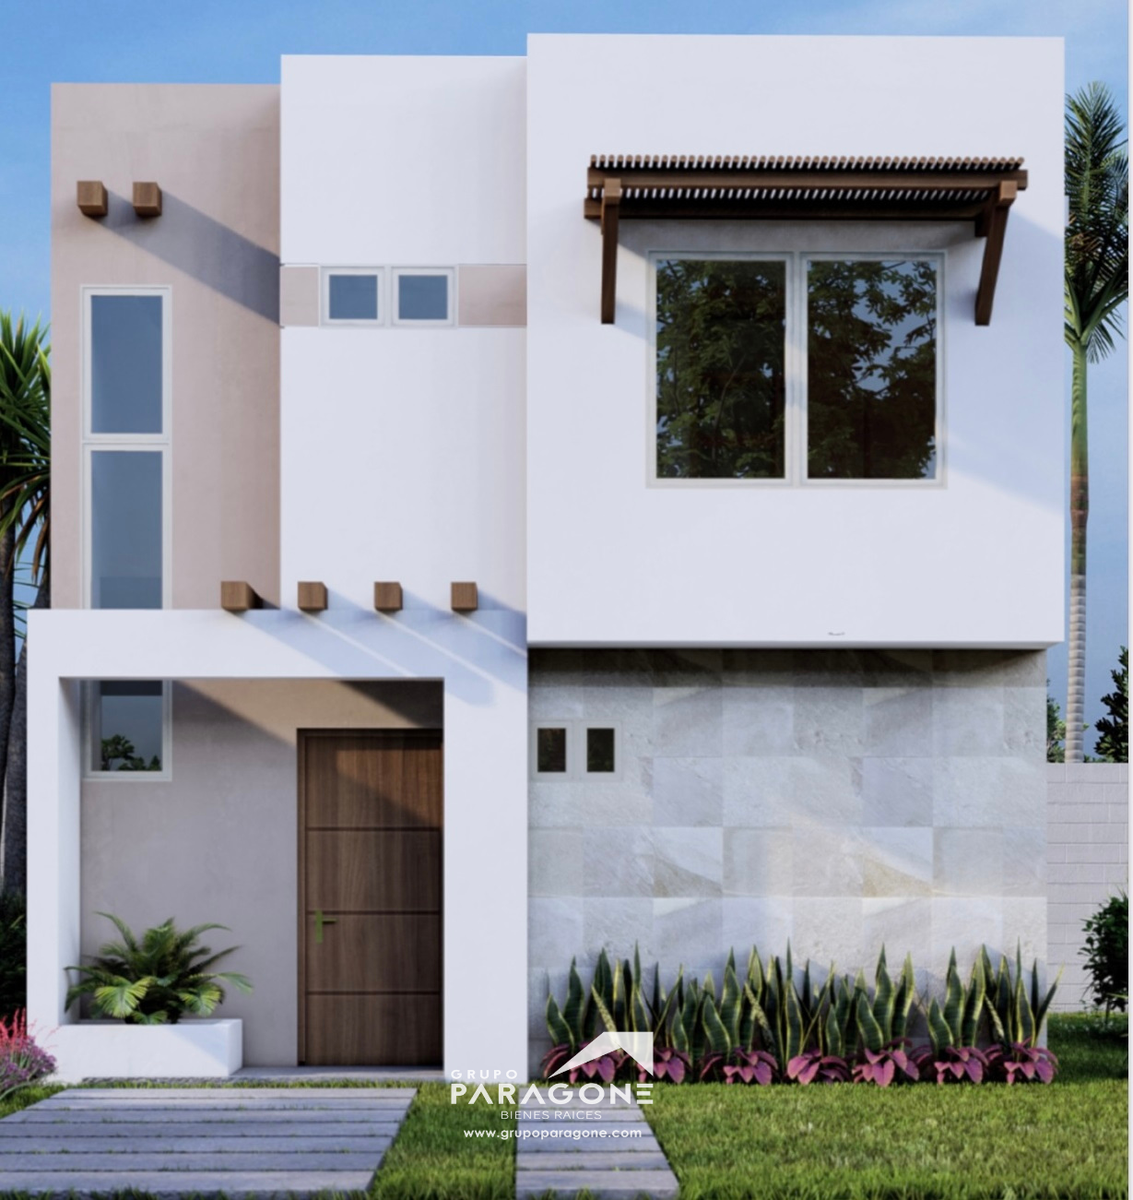 Casa en venta en El,Habal-mazatlan, Cerritos al mar, Mazatlán, Sinaloa -  Casas y Terrenos